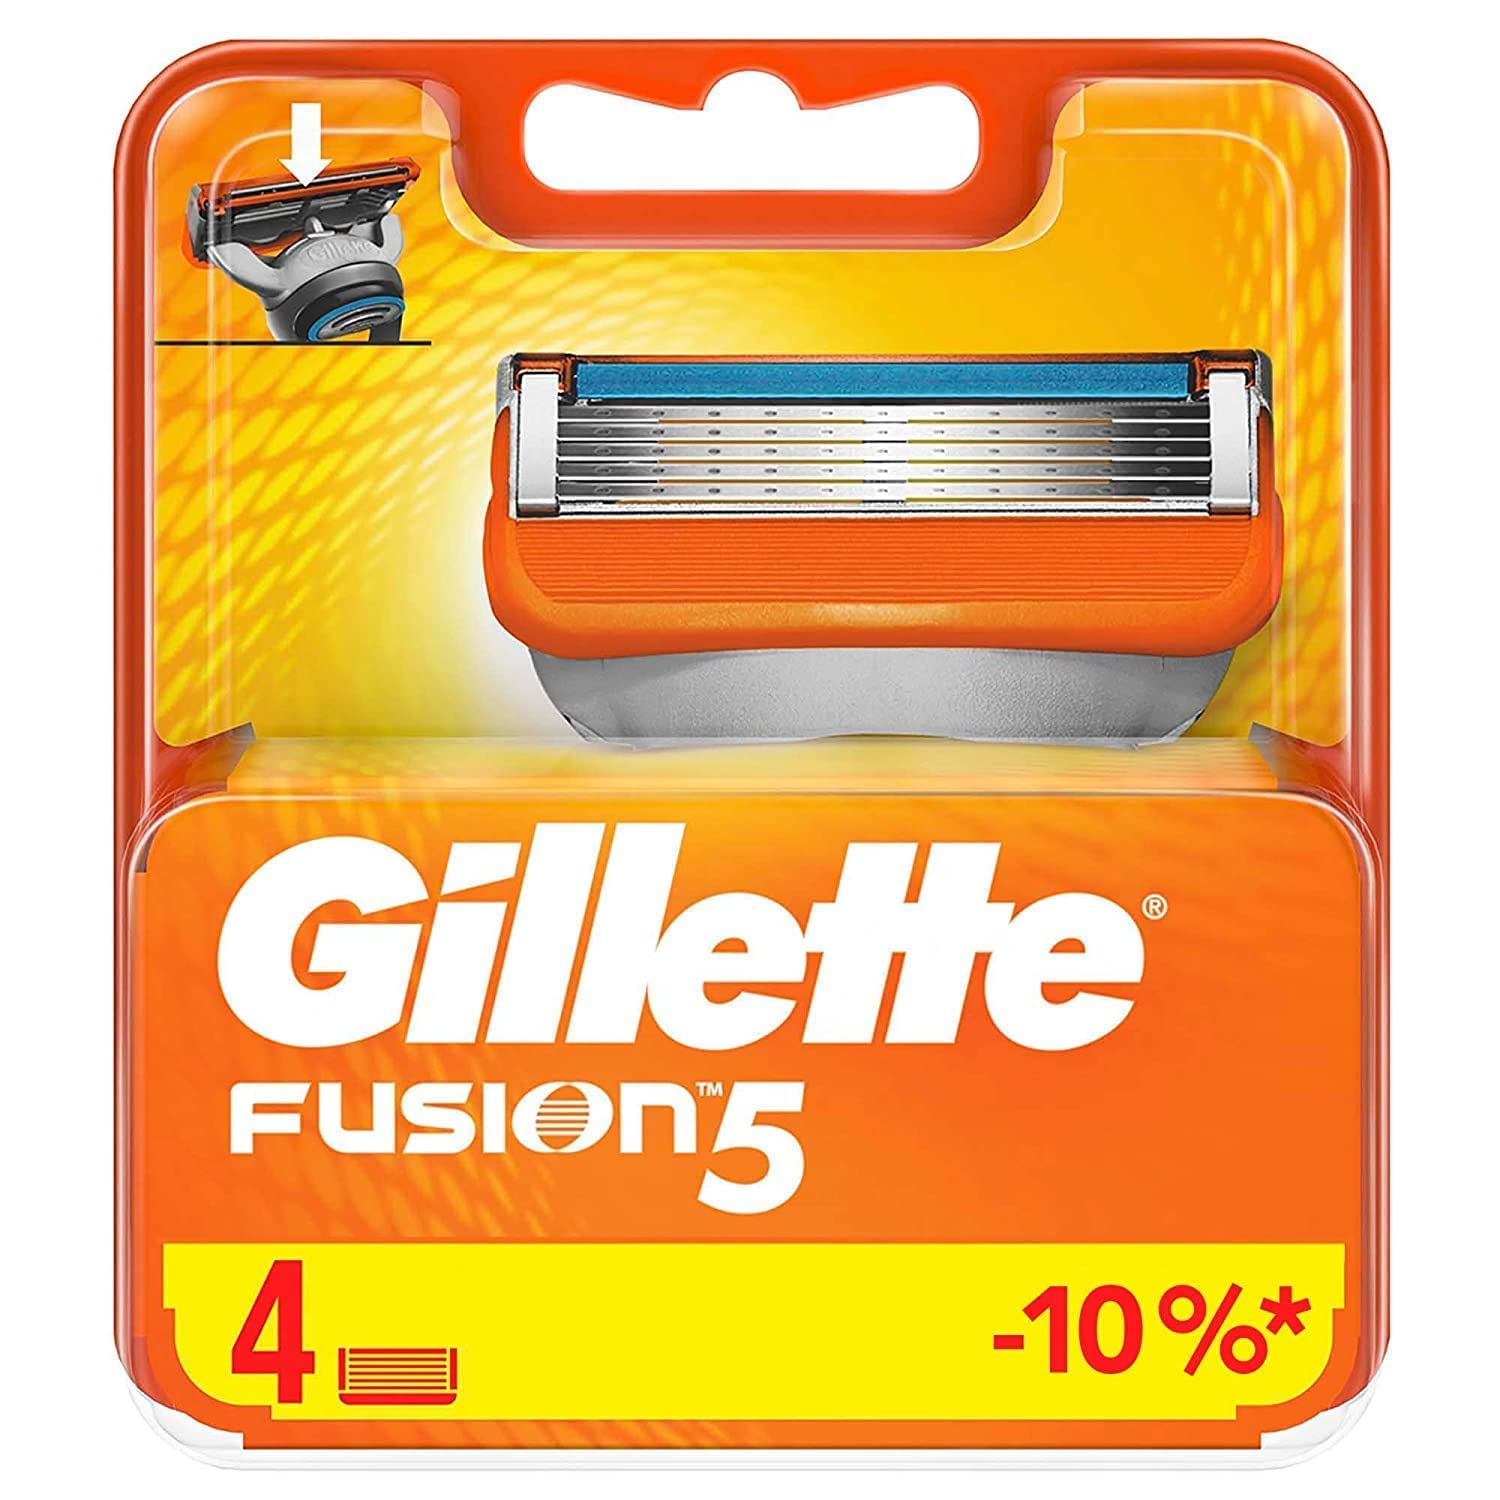 Gillette Fusion Power stk – emmaliving